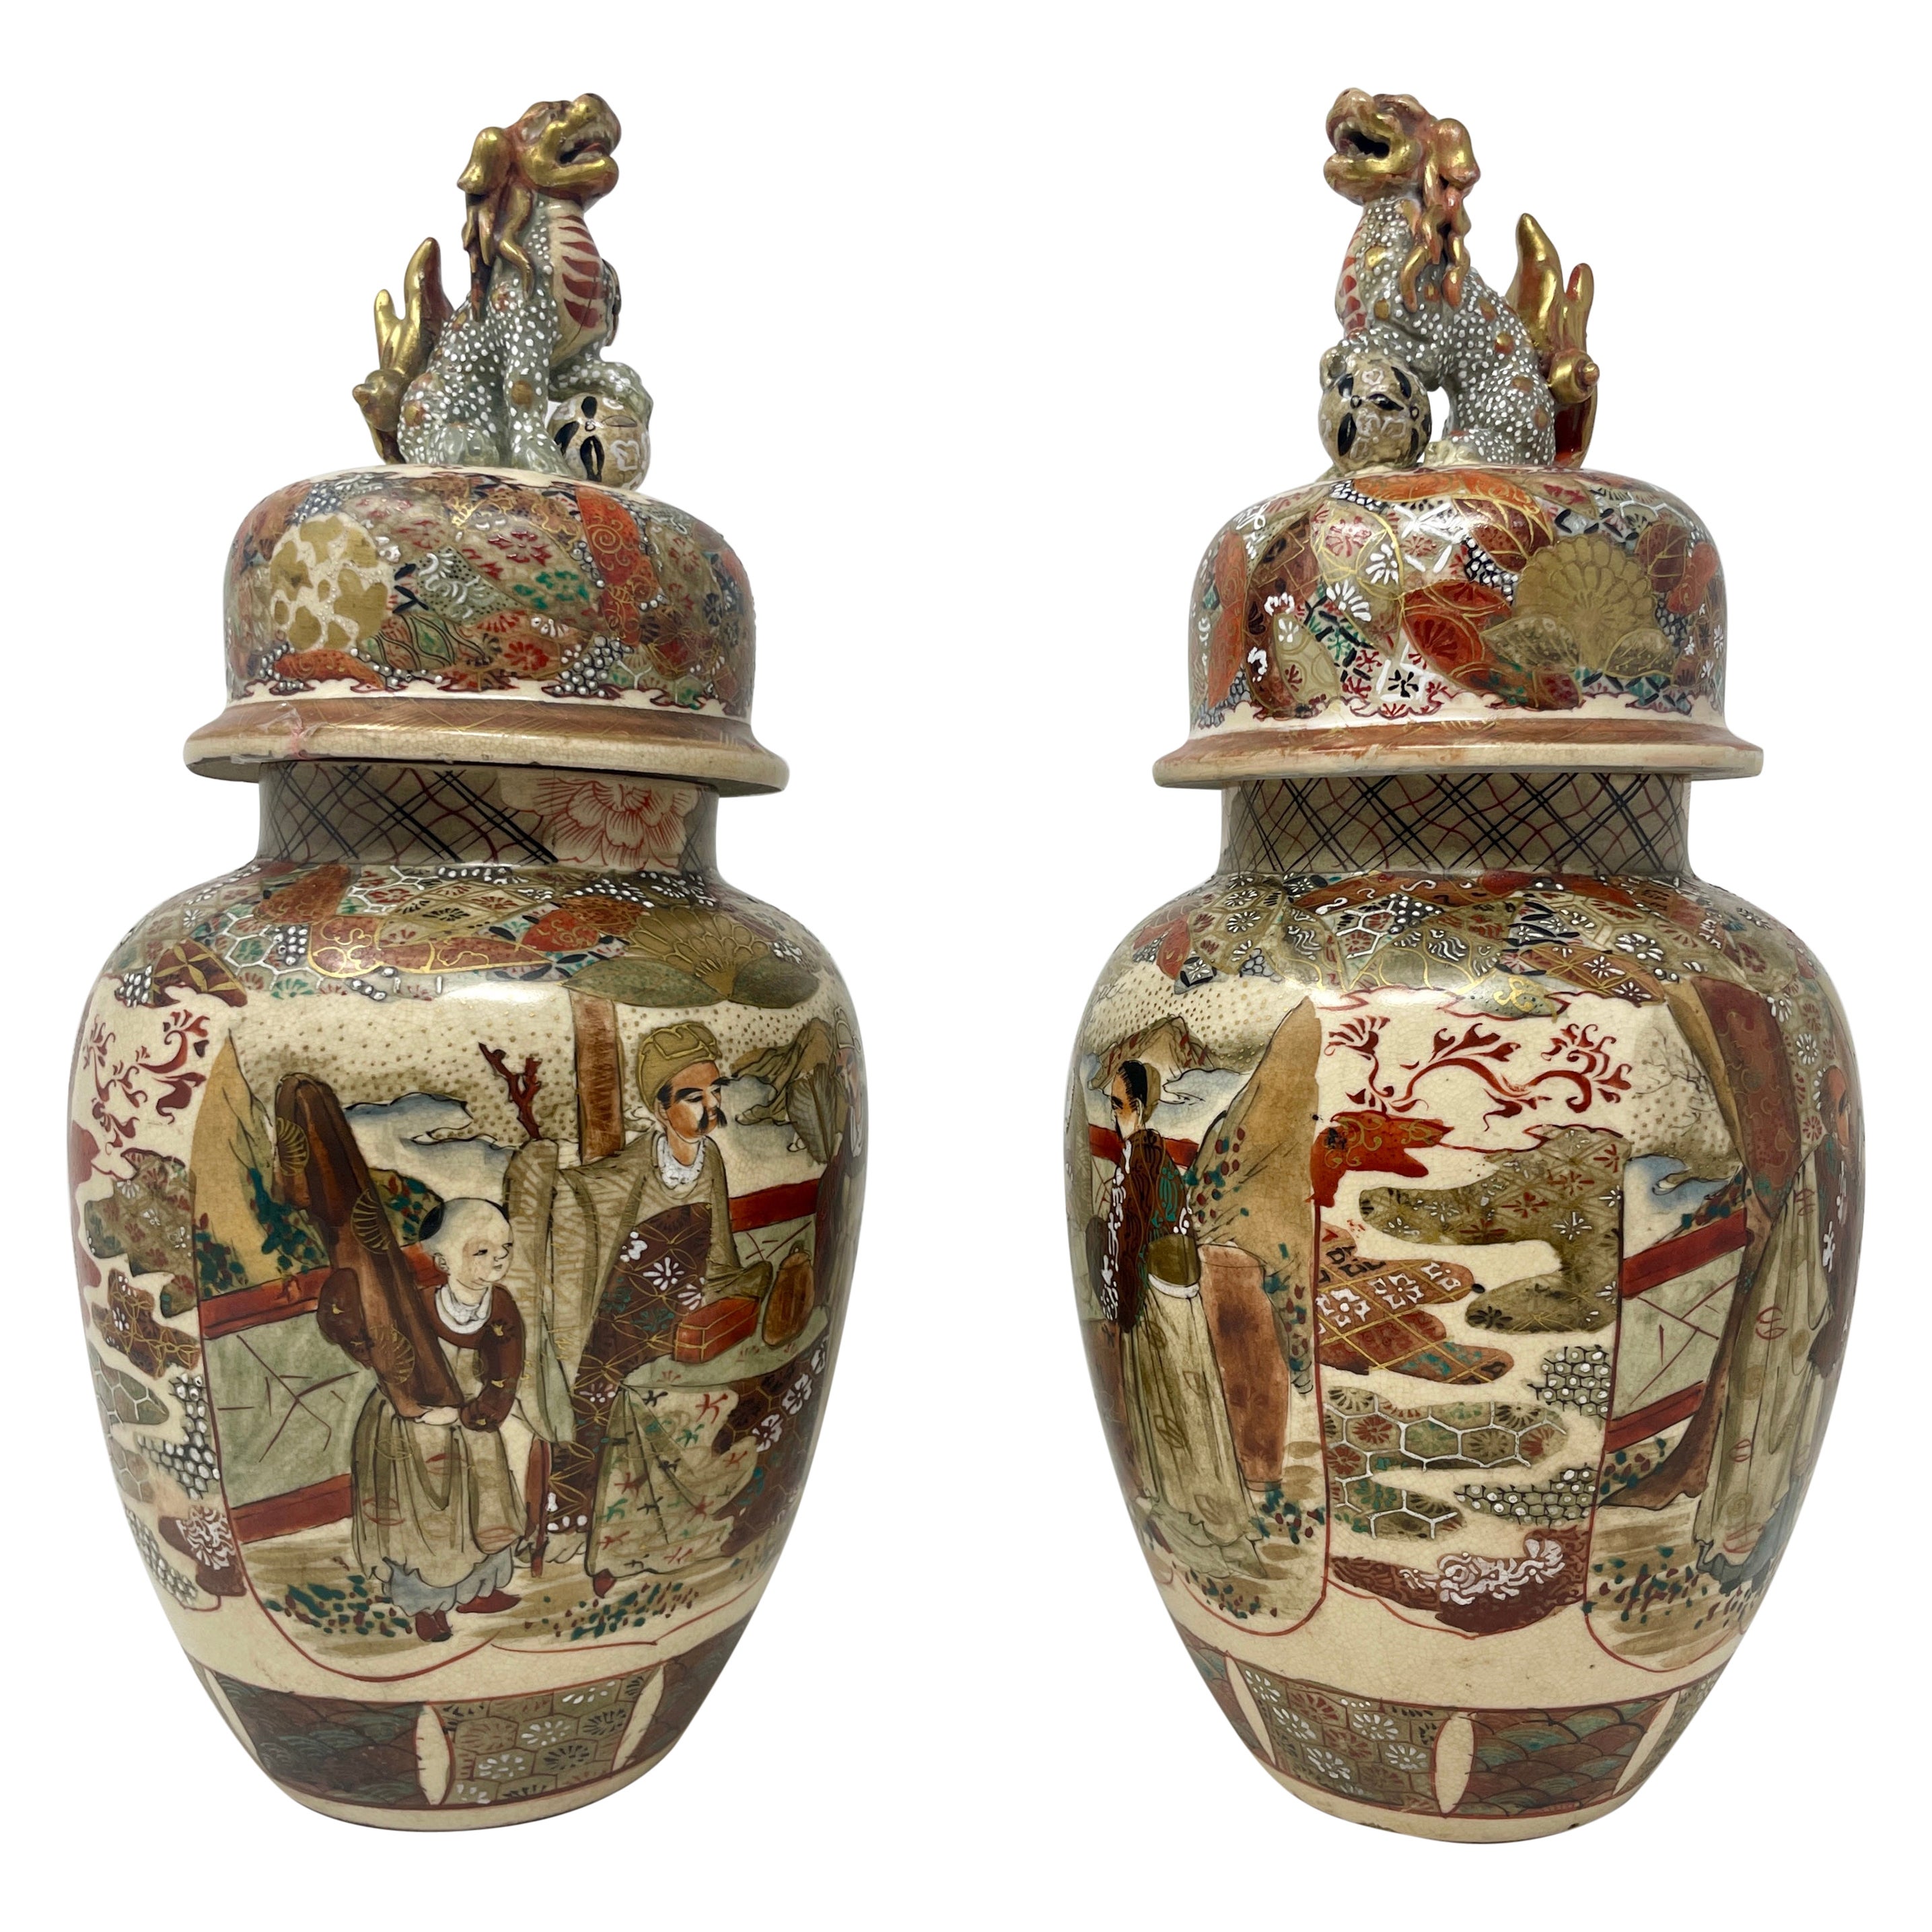 Paar antike japanische Satsuma-Porzellanurnen aus dem 19. Jahrhundert, um 1880